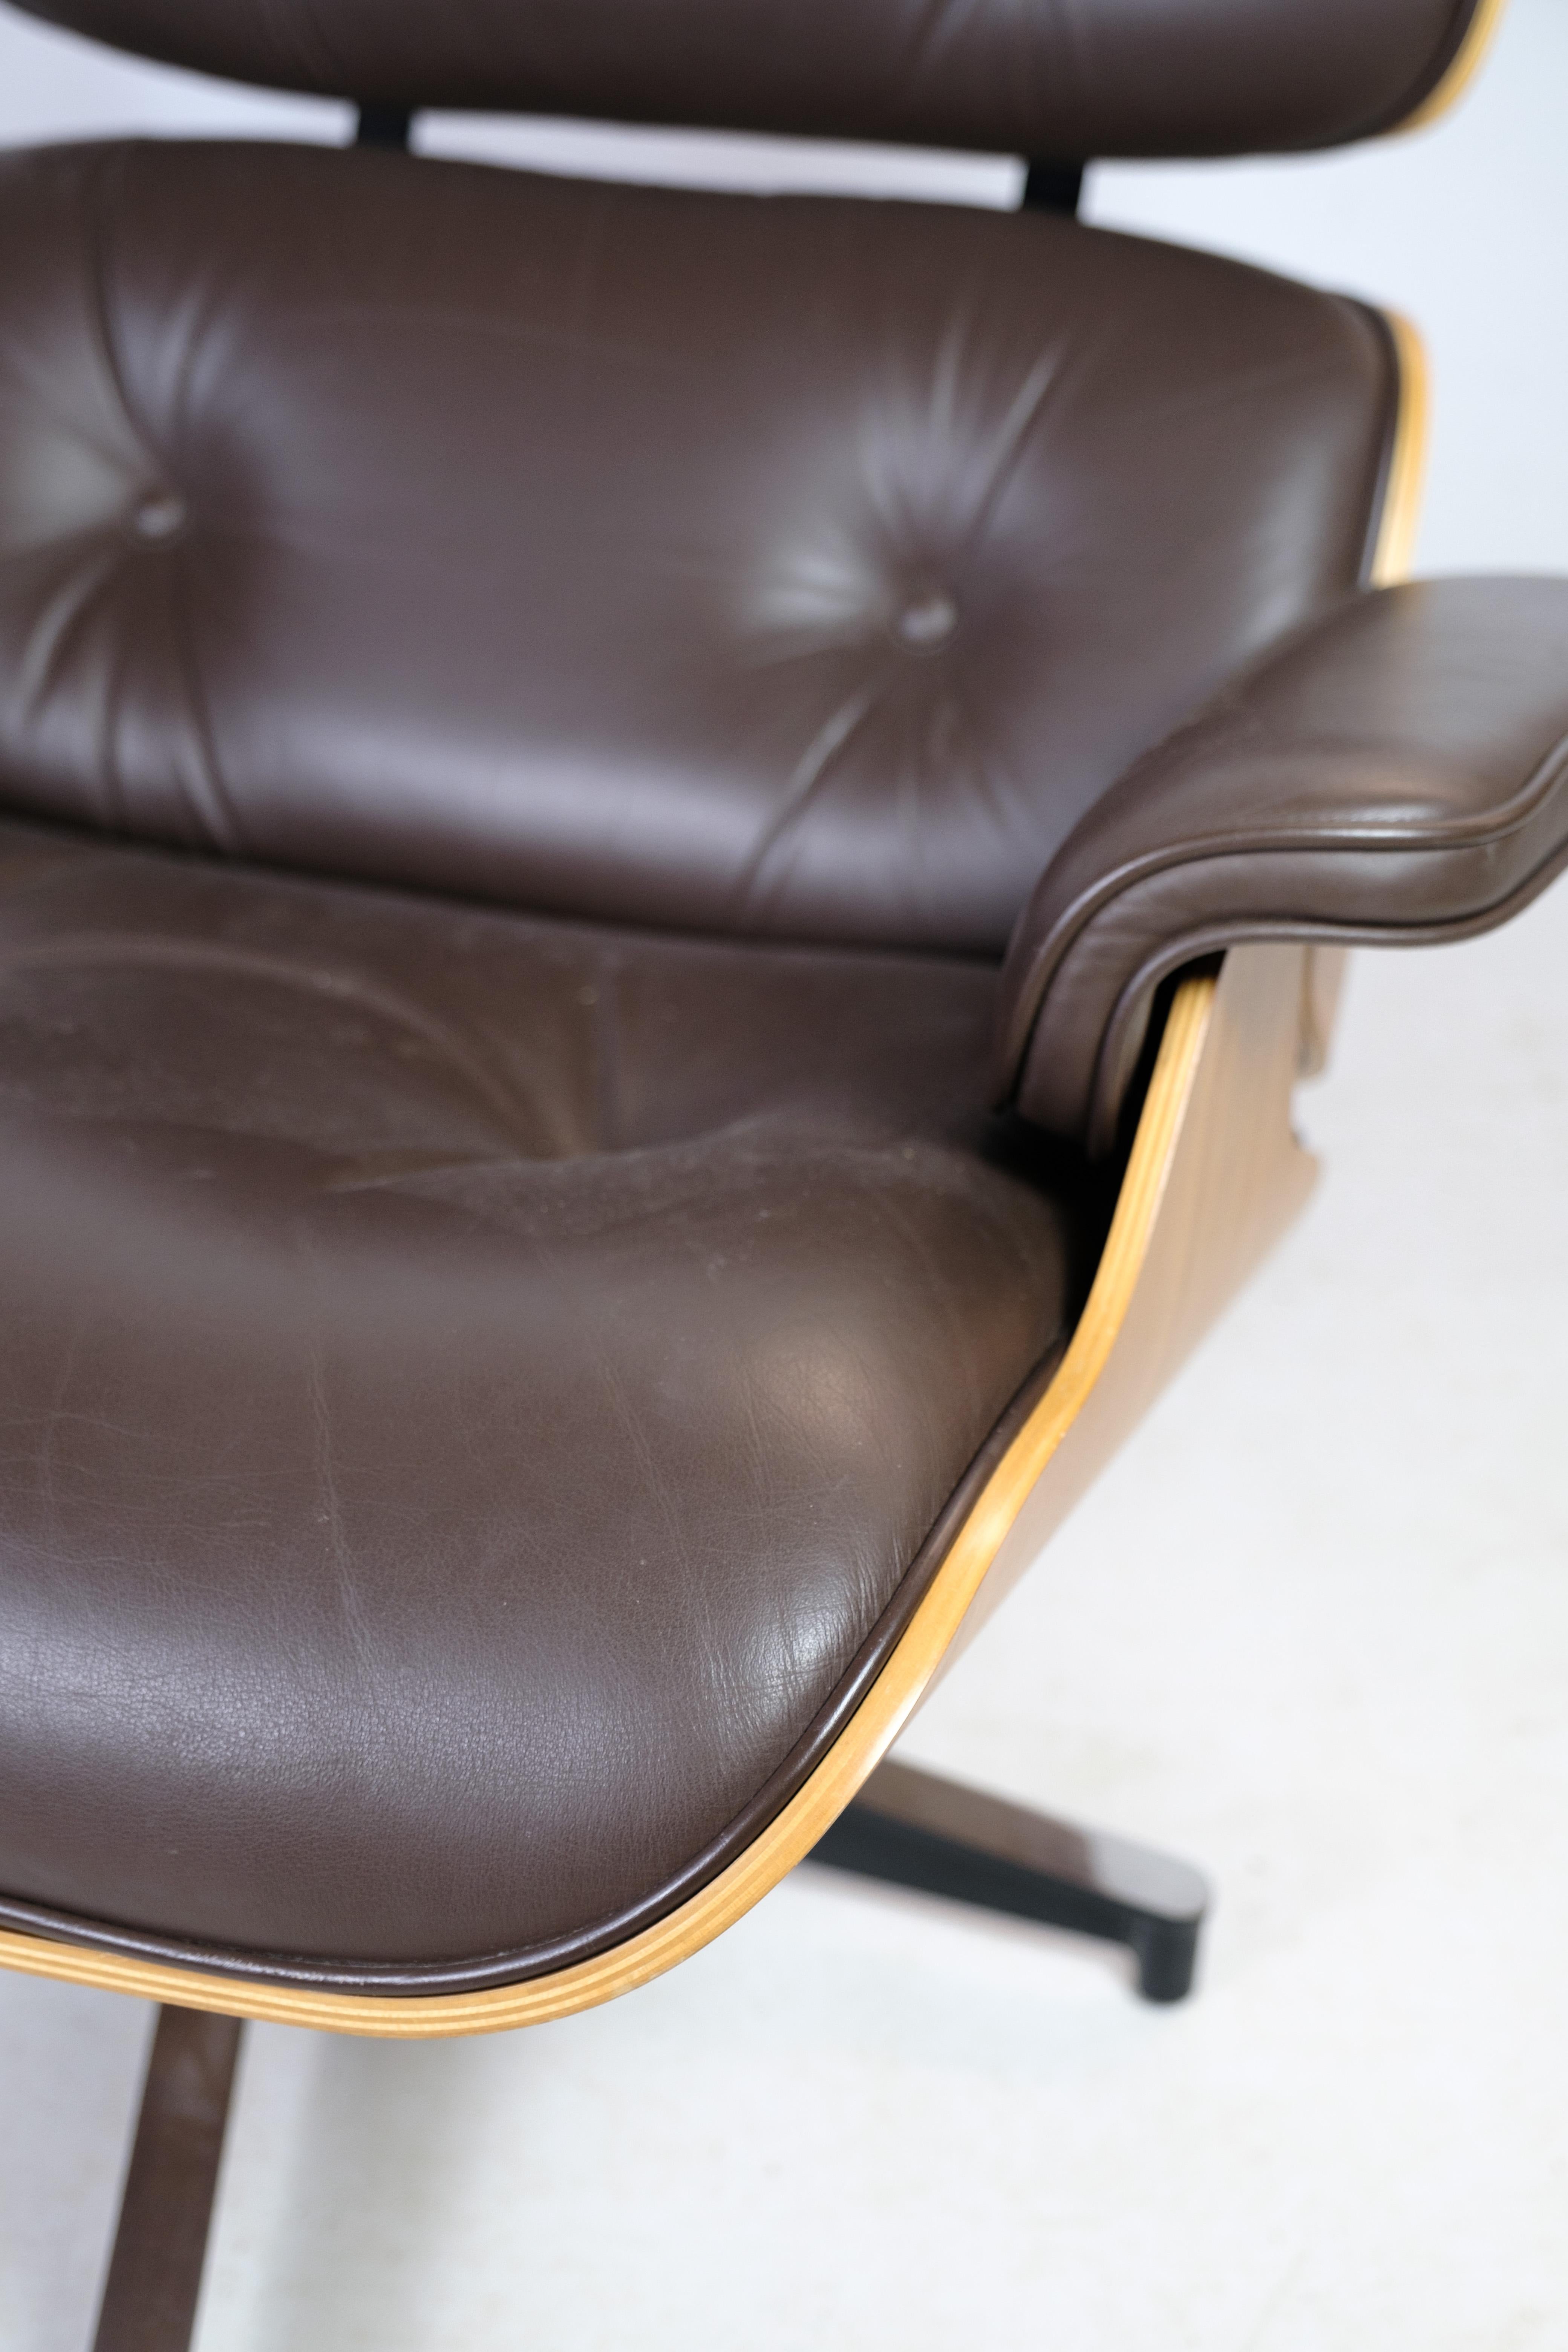 Der Charles Eames Lounge Chair in braunem Leder und hellem Walnussholz, hergestellt von Herman Miller. Dieses 1958 entworfene und 2007 zum Leben erweckte Kultmöbel steht für zeitlose Eleganz und außergewöhnliche Handwerkskunst.

Der Charles Eames